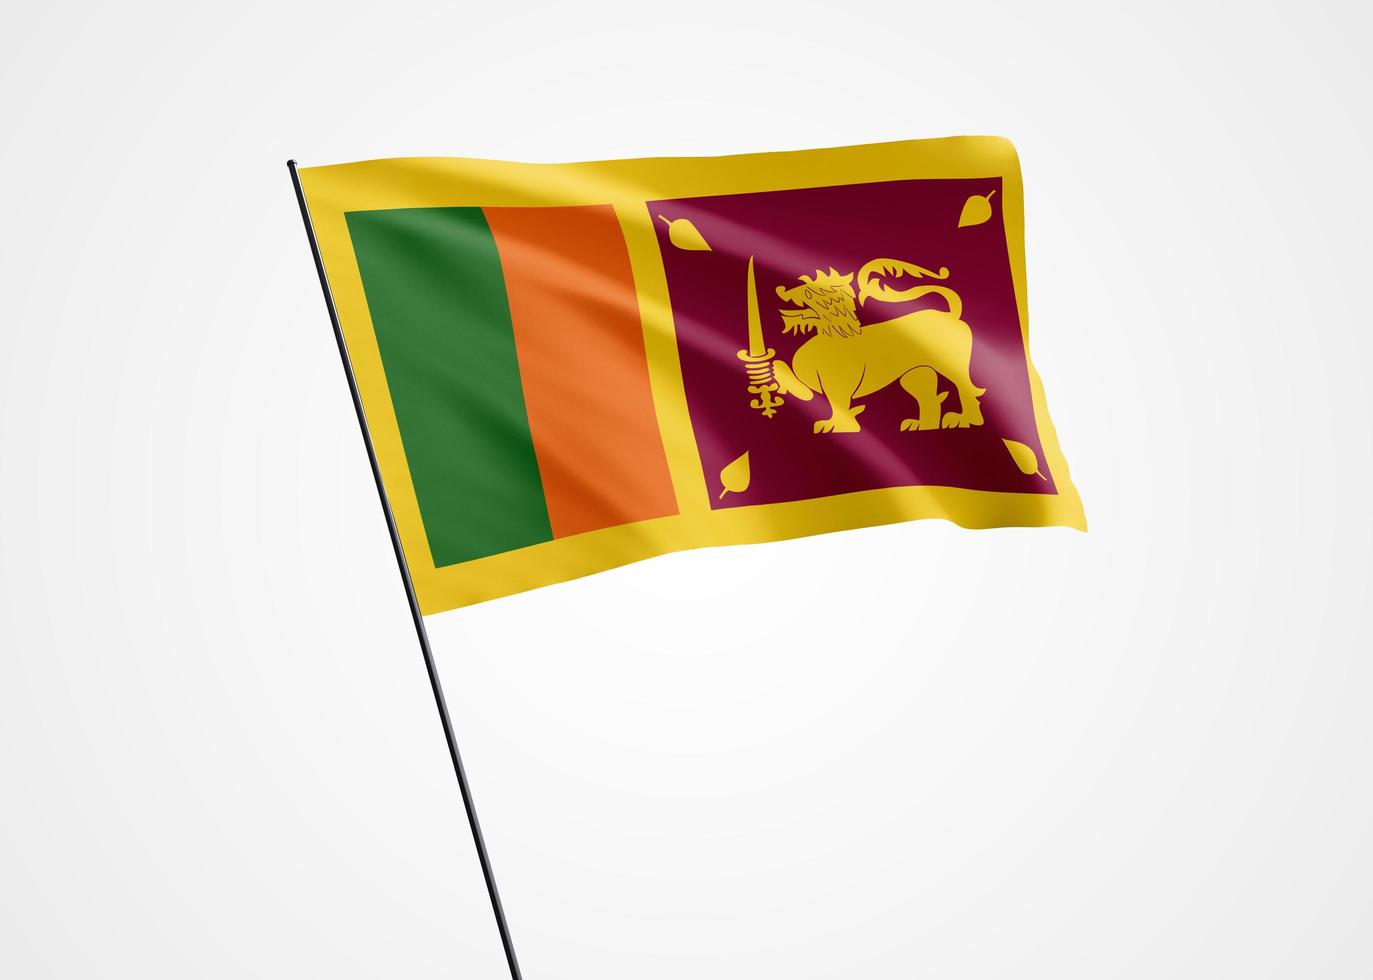 le sri lanka vole haut dans le fond isolé. 04 février fête de l'indépendance du Sri Lanka. collection de drapeau national du monde illustration 3d photo